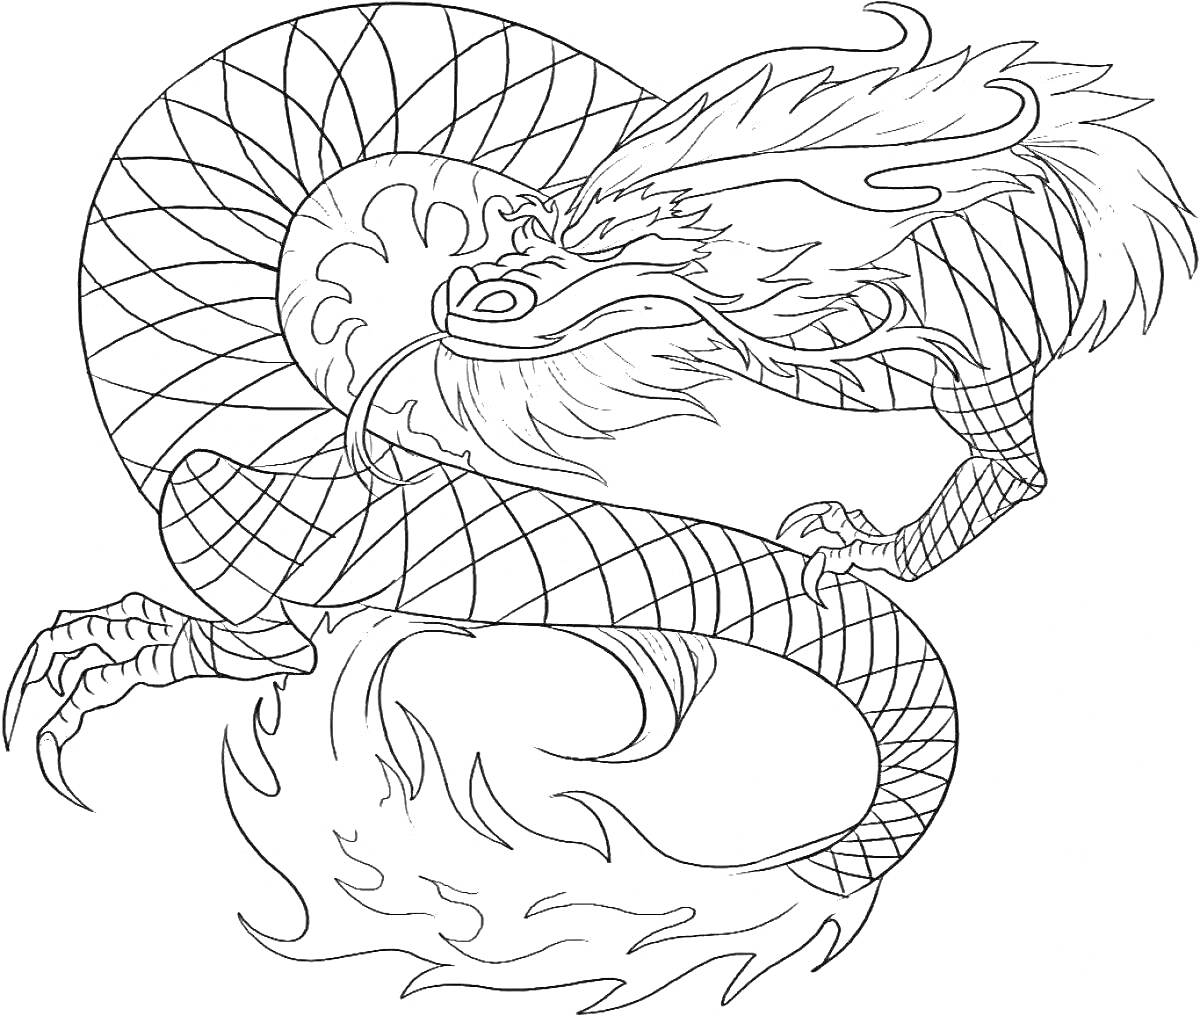 Раскраска Китайский дракон с чешуей и когтями